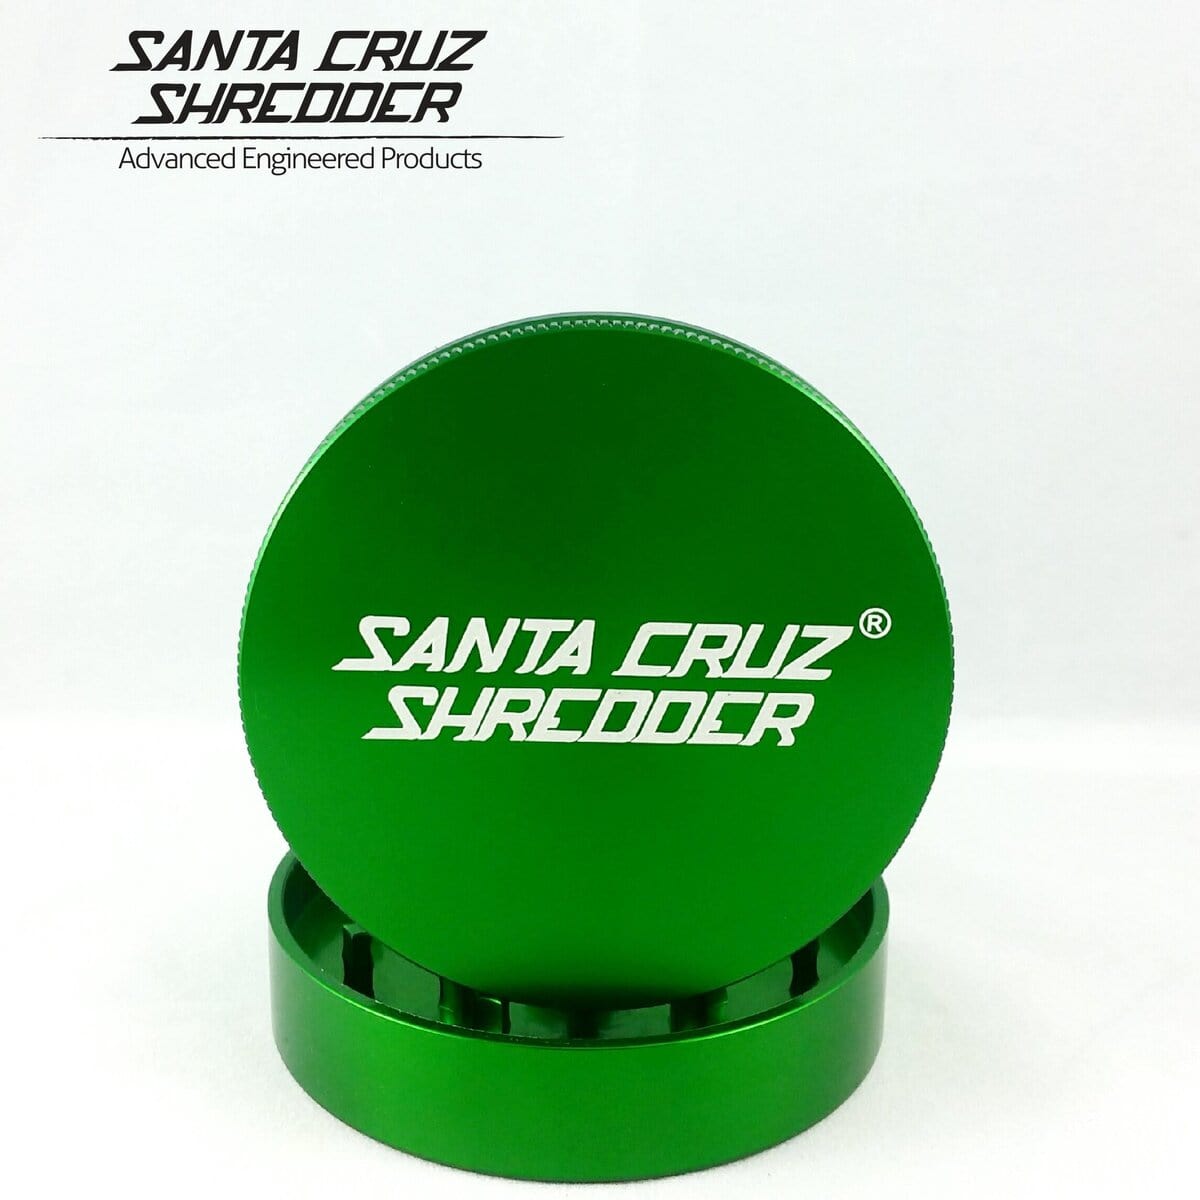 Santa Cruz Shredder Grinder Green Santa Cruz Shredder 2 Piece Medium Grinder